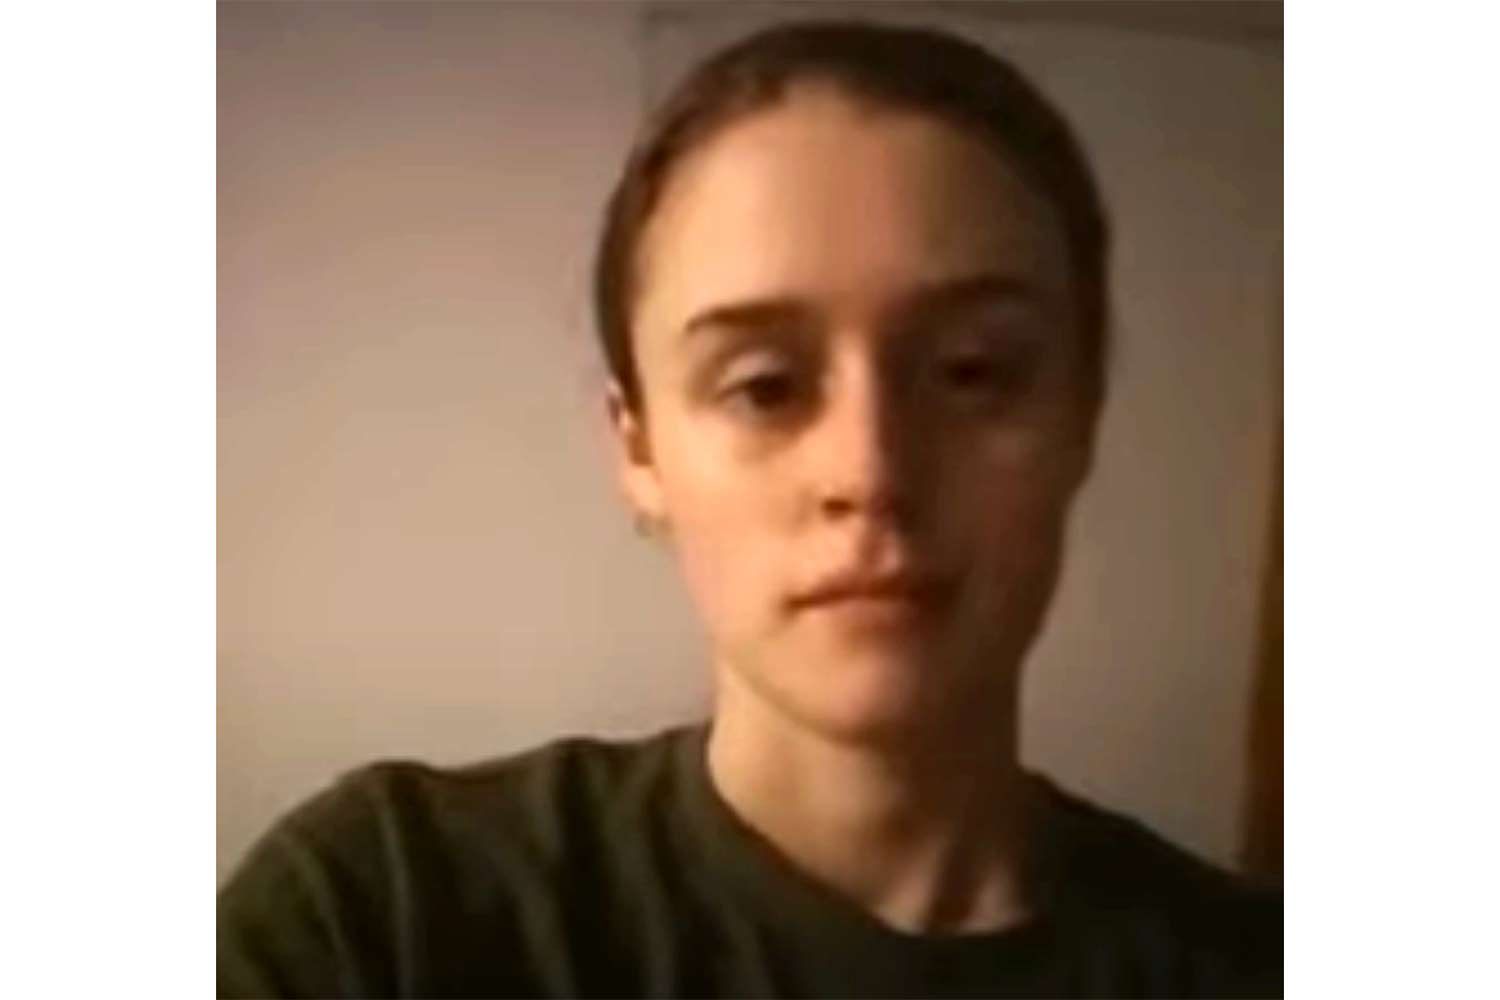 Пенсильвания. Дочь убедила родителей присоединиться к пакту о двойном убийстве и самоубийстве, считает полиция